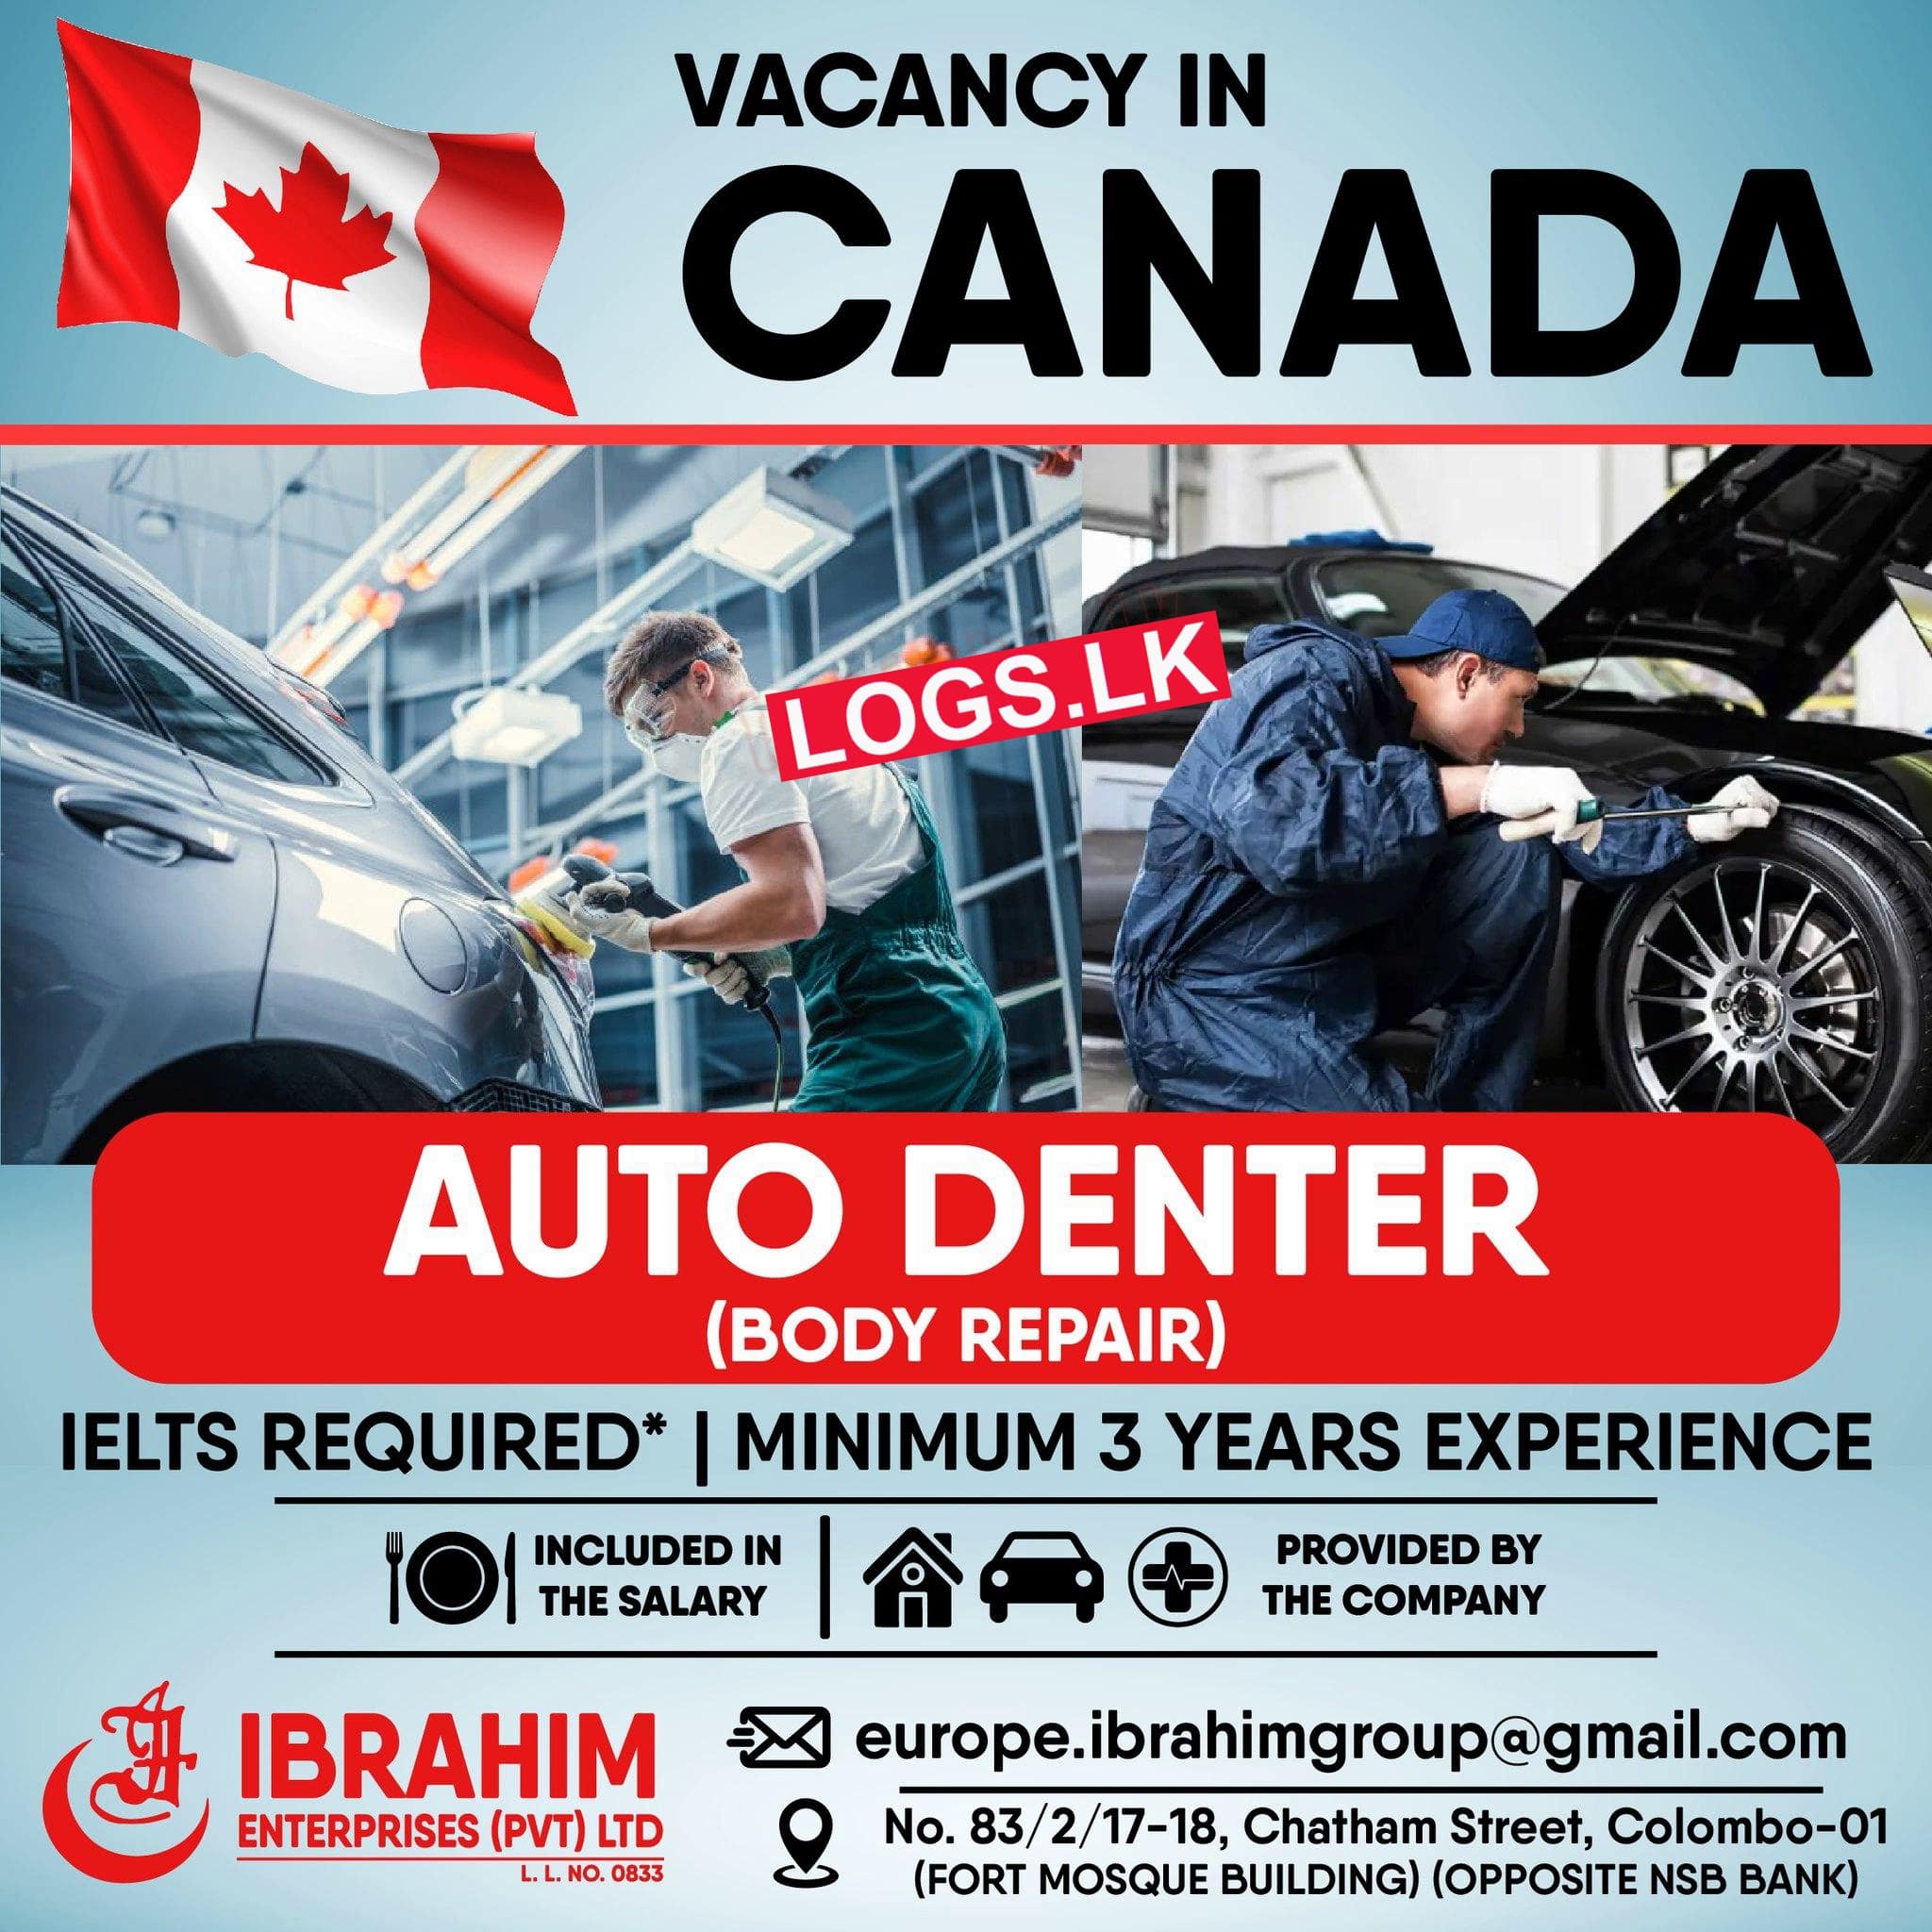 Auto Denter Job Vacancy at Ibrahim Enterprises Canada Job Vacancies